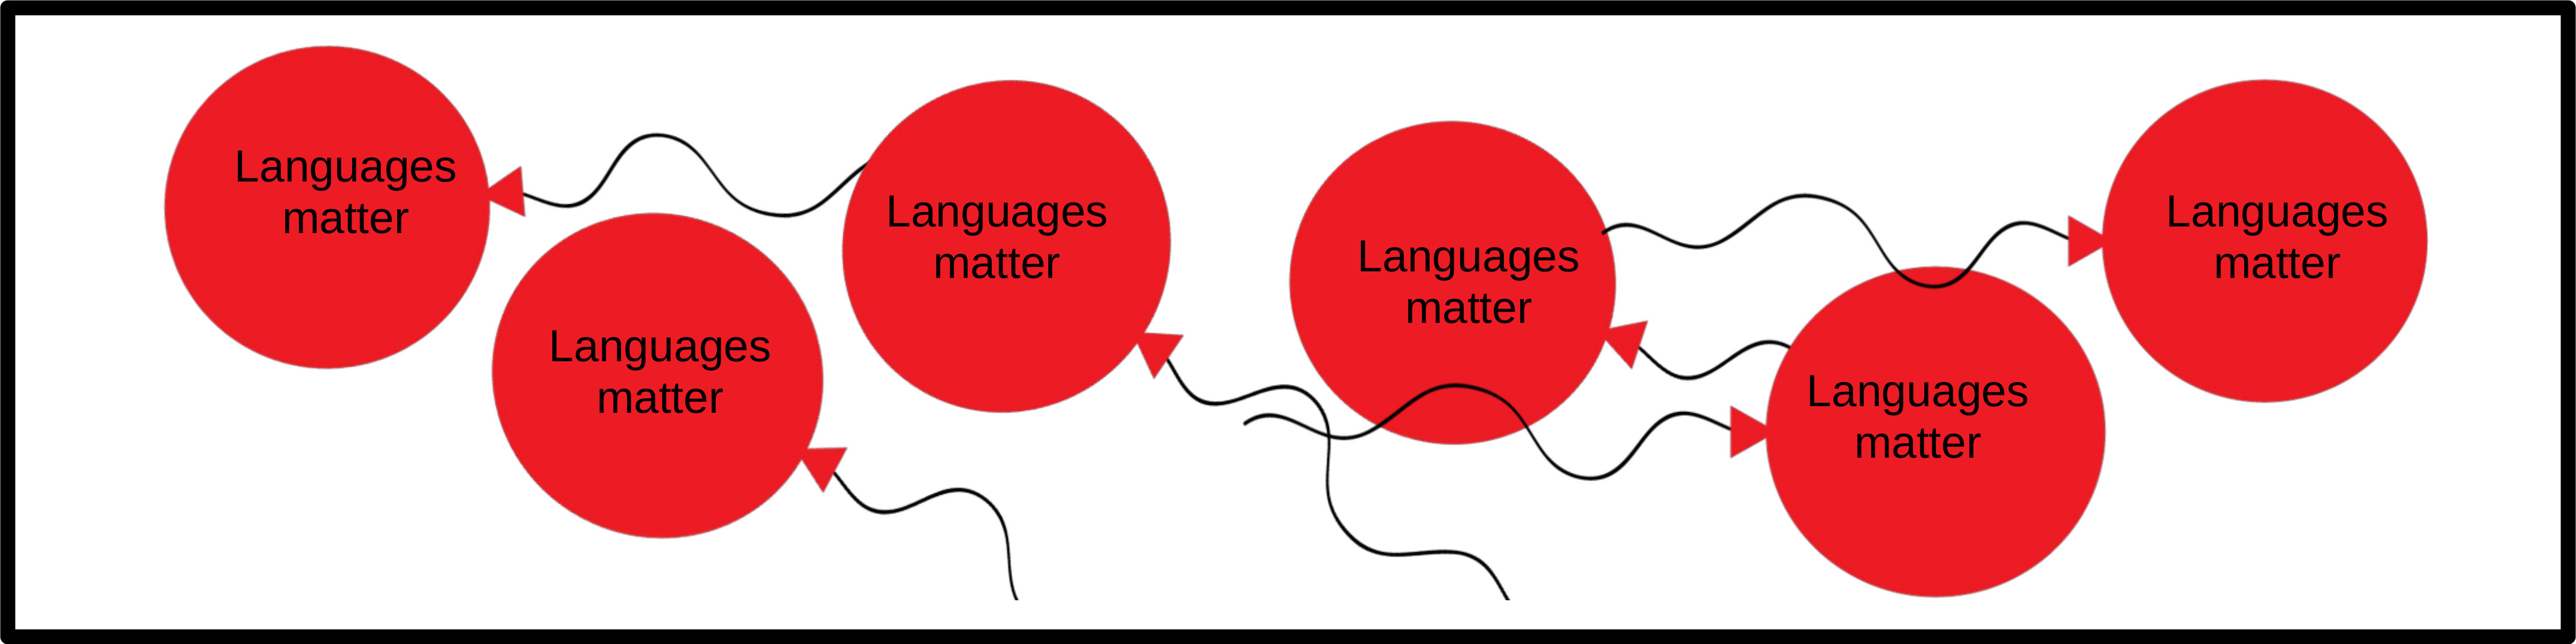 Languages matter